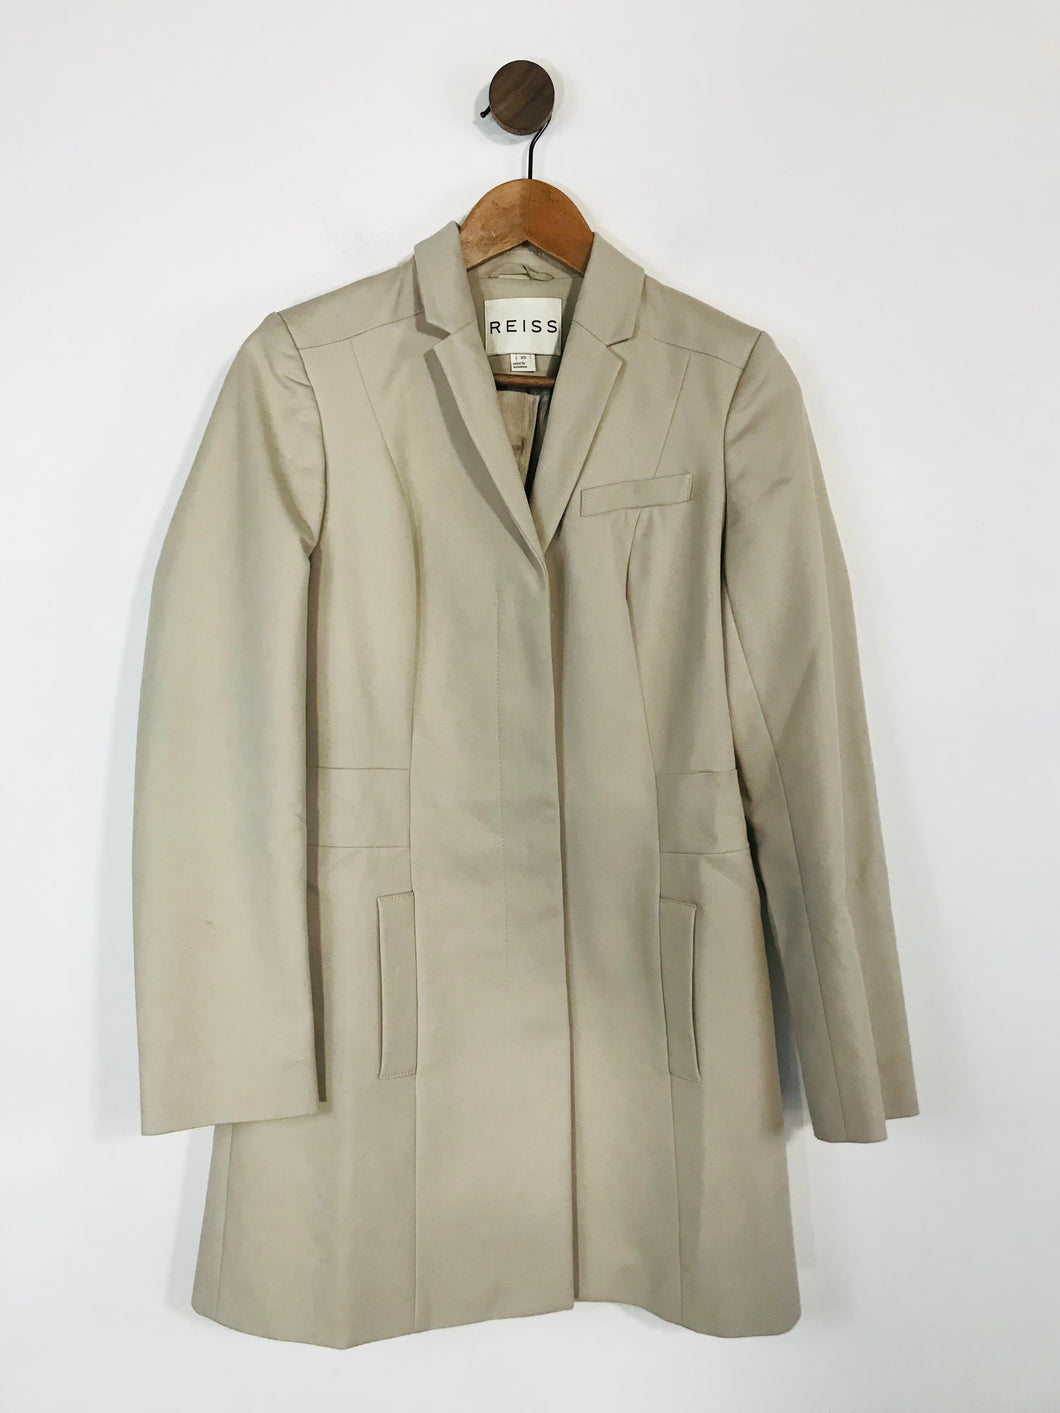 Reiss Women's Cotton Smart Overcoat | XS UK6-8 | Beige